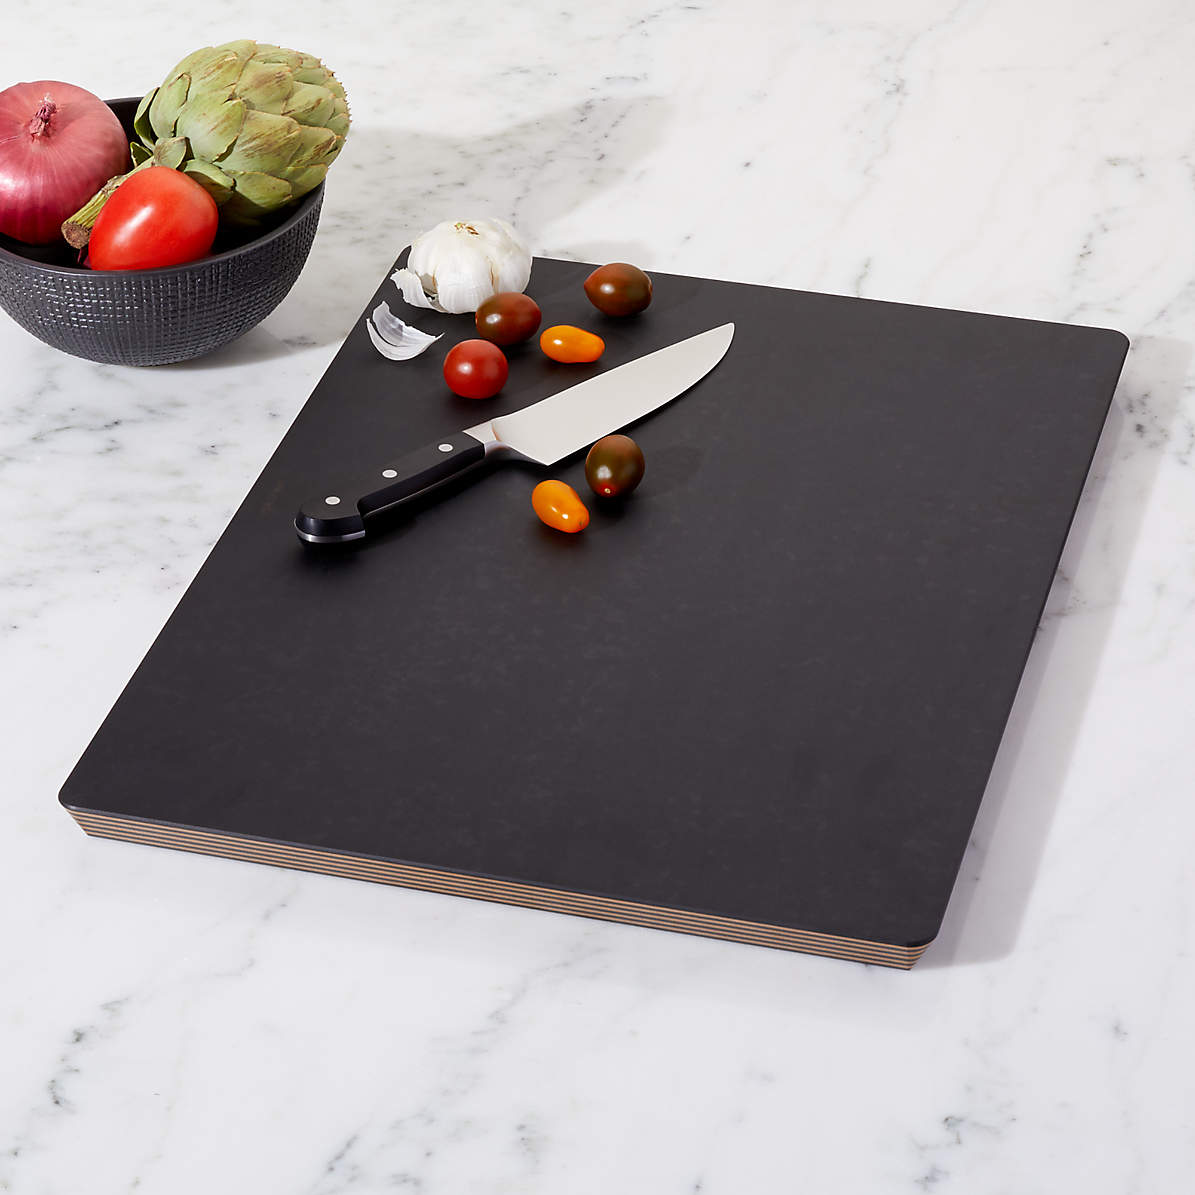 Epicurean Big Block Rectangular Black Composite Cutting Board/Chopping Board